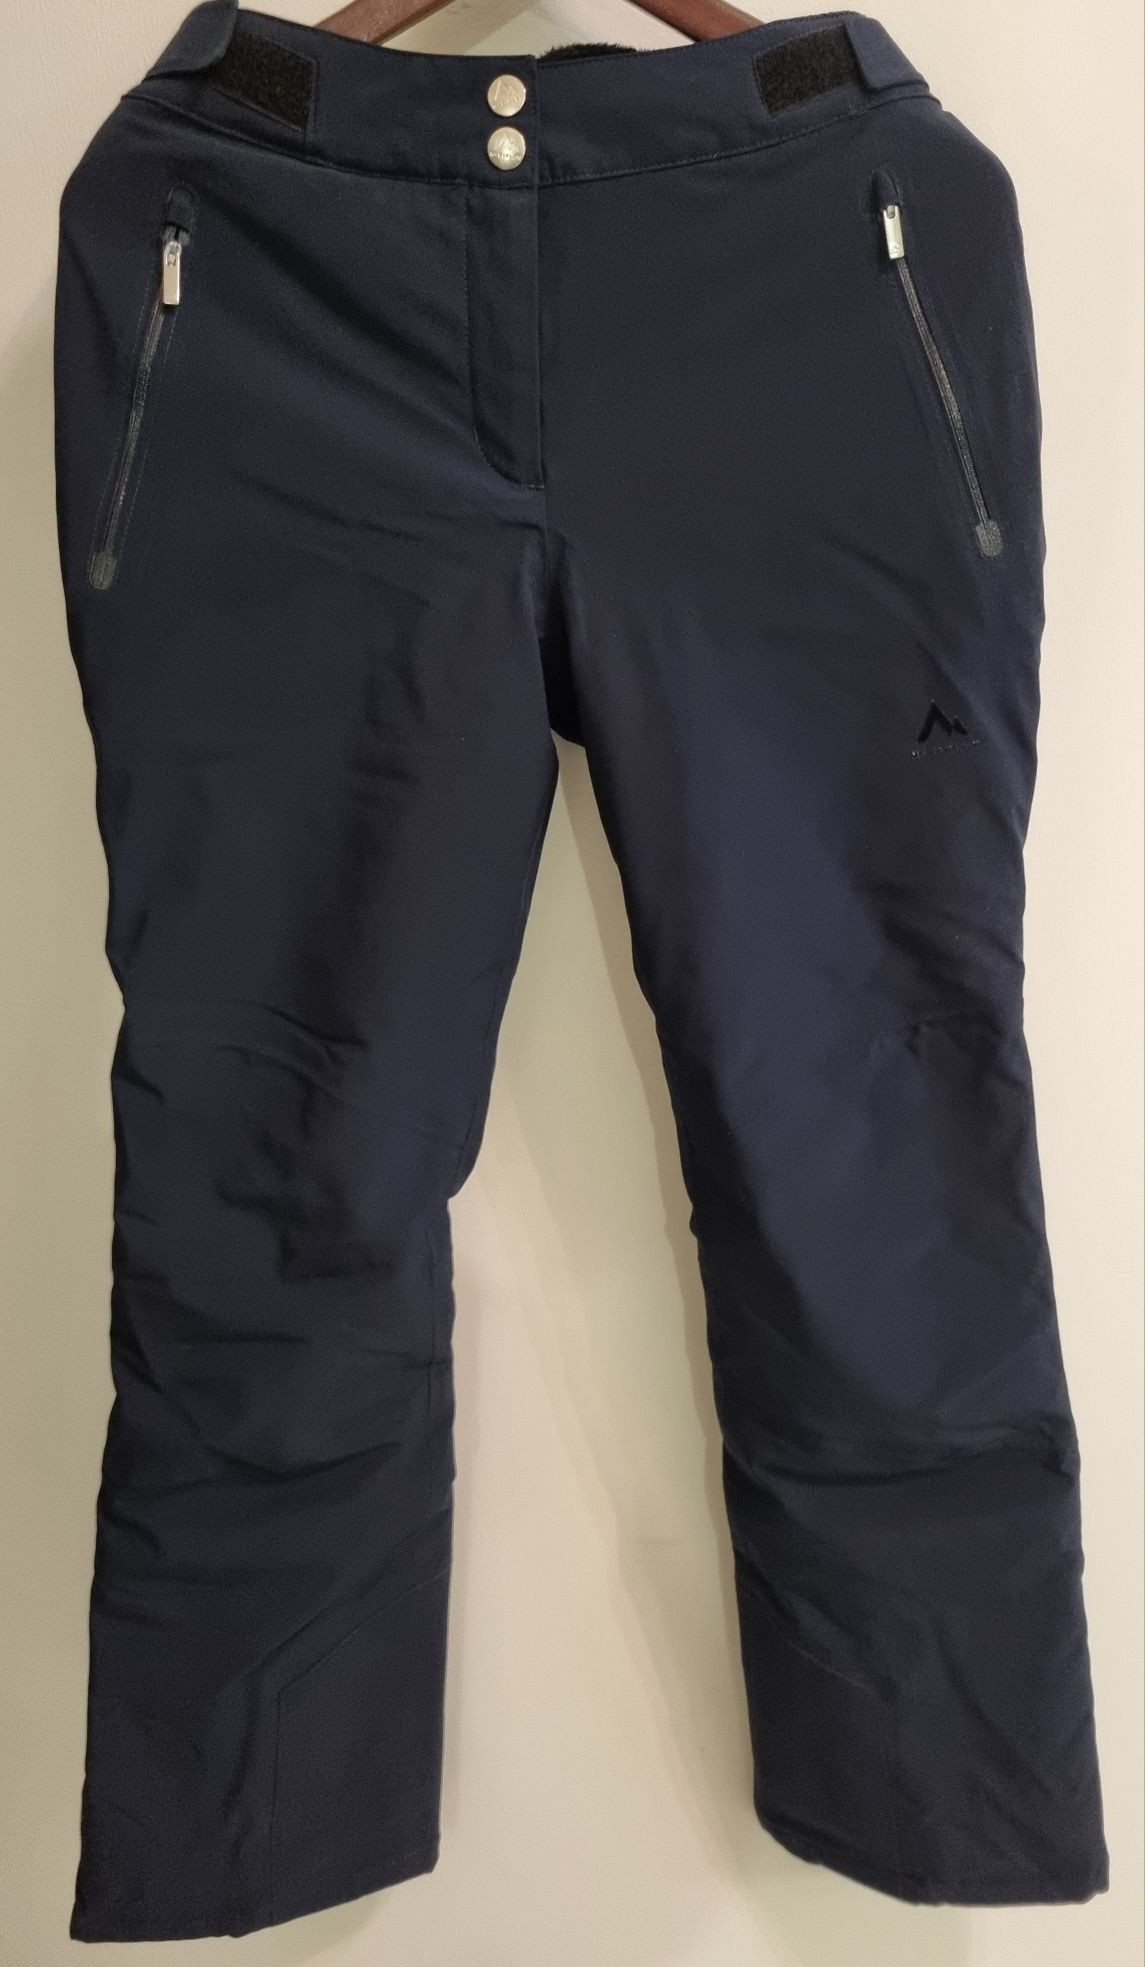 Spodnie narciarskie juniorskie - McKinley - używane w idealnym stanie